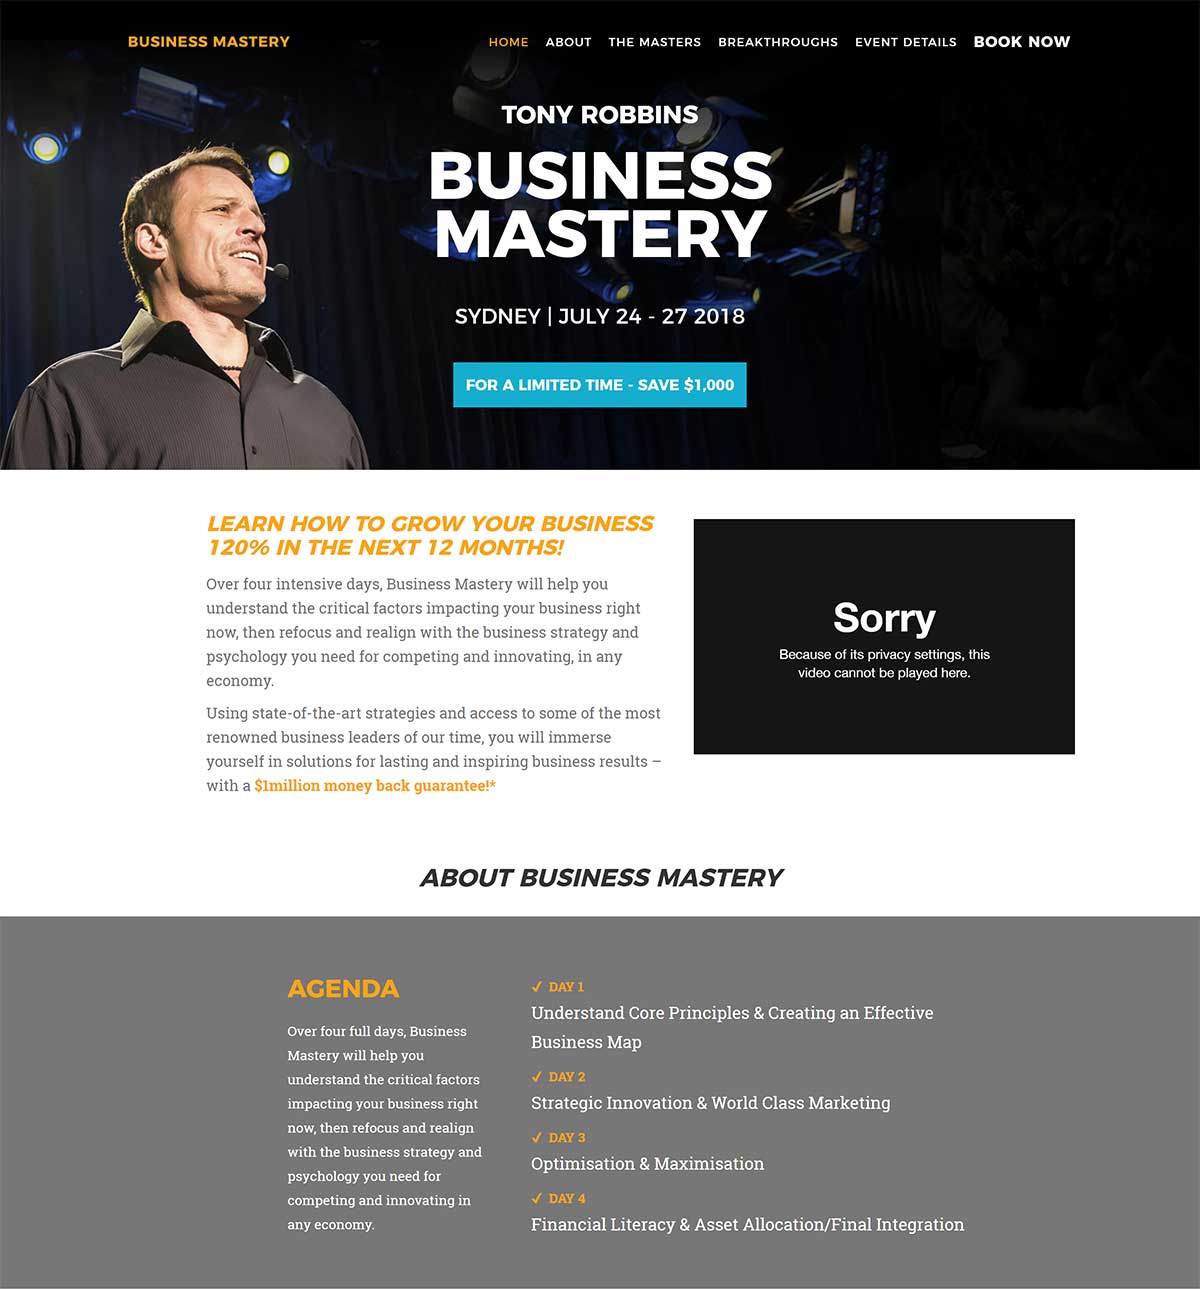 Tony Robbins' Business Mastery